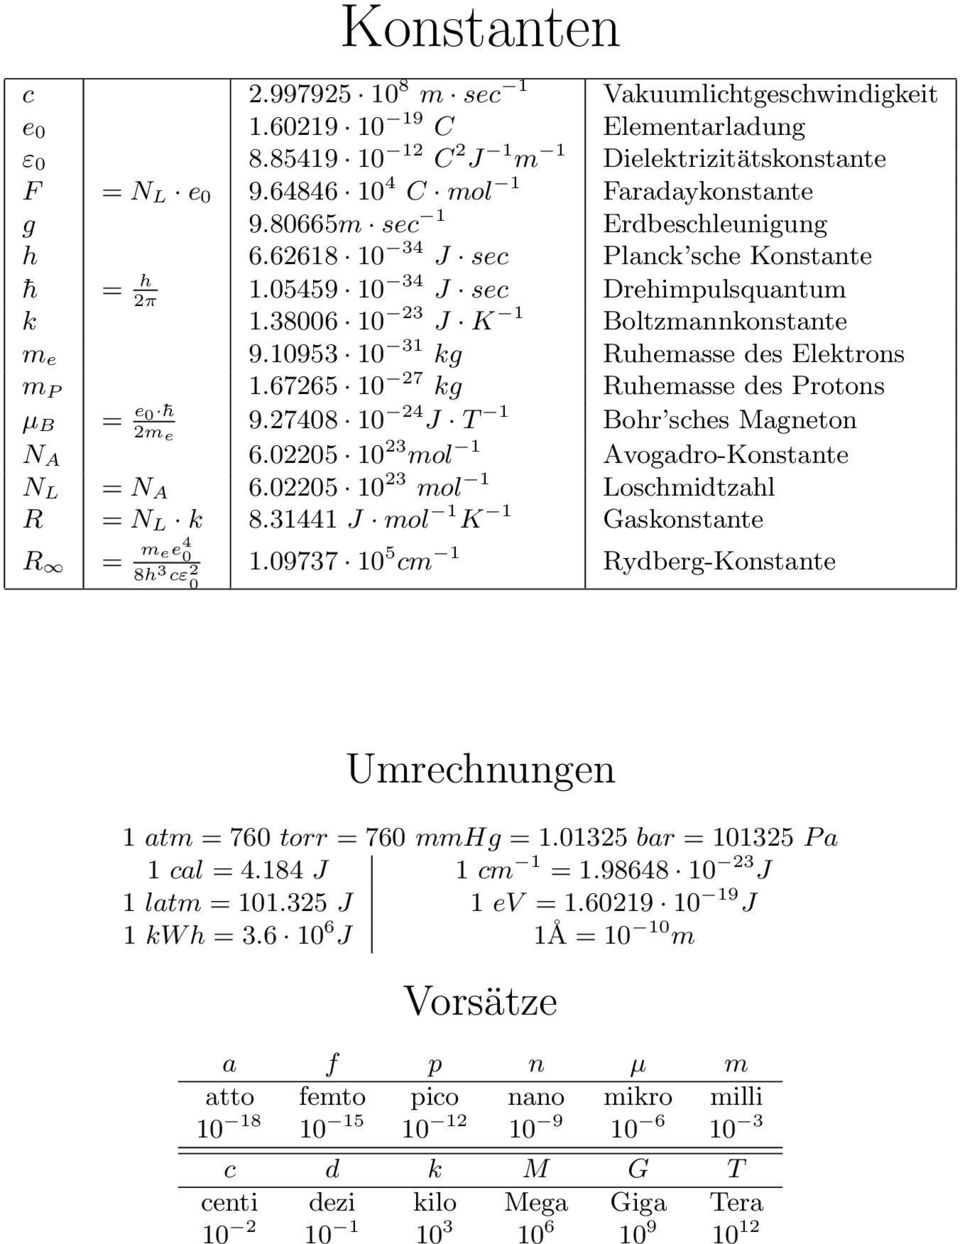 38006 10 23 J K 1 Boltzmannkonstante m e 9.10953 10 31 kg Ruhemasse des Elektrons m P 1.67265 10 27 kg Ruhemasse des Protons µ B = e 0 h 2m e 9.27408 10 24 J T 1 Bohr sches Magneton N A 6.